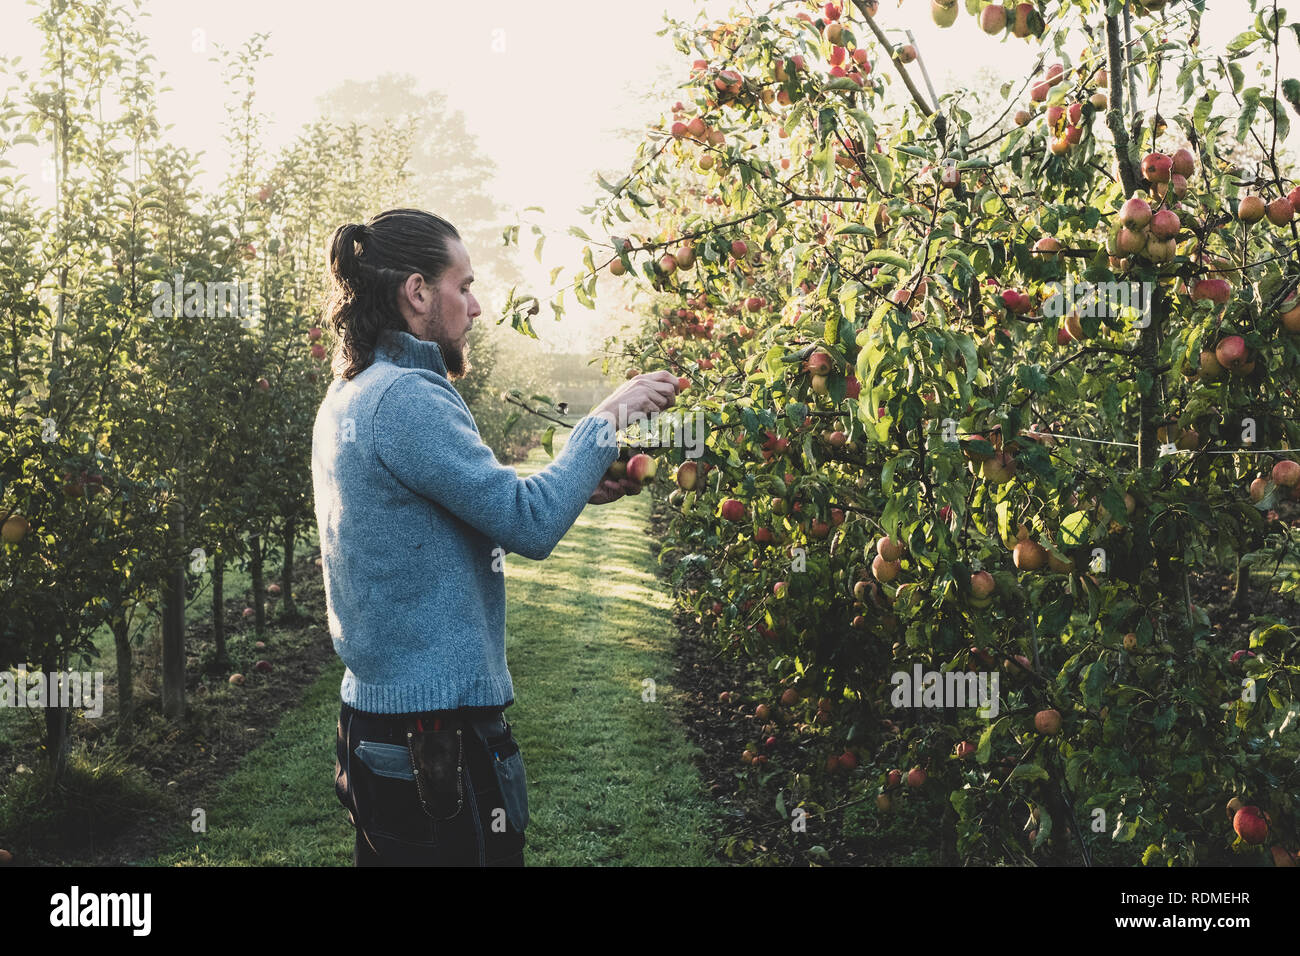 Mann in Apple Orchard, Äpfel vom Baum pflücken. Apfelernte im Herbst. Stockfoto